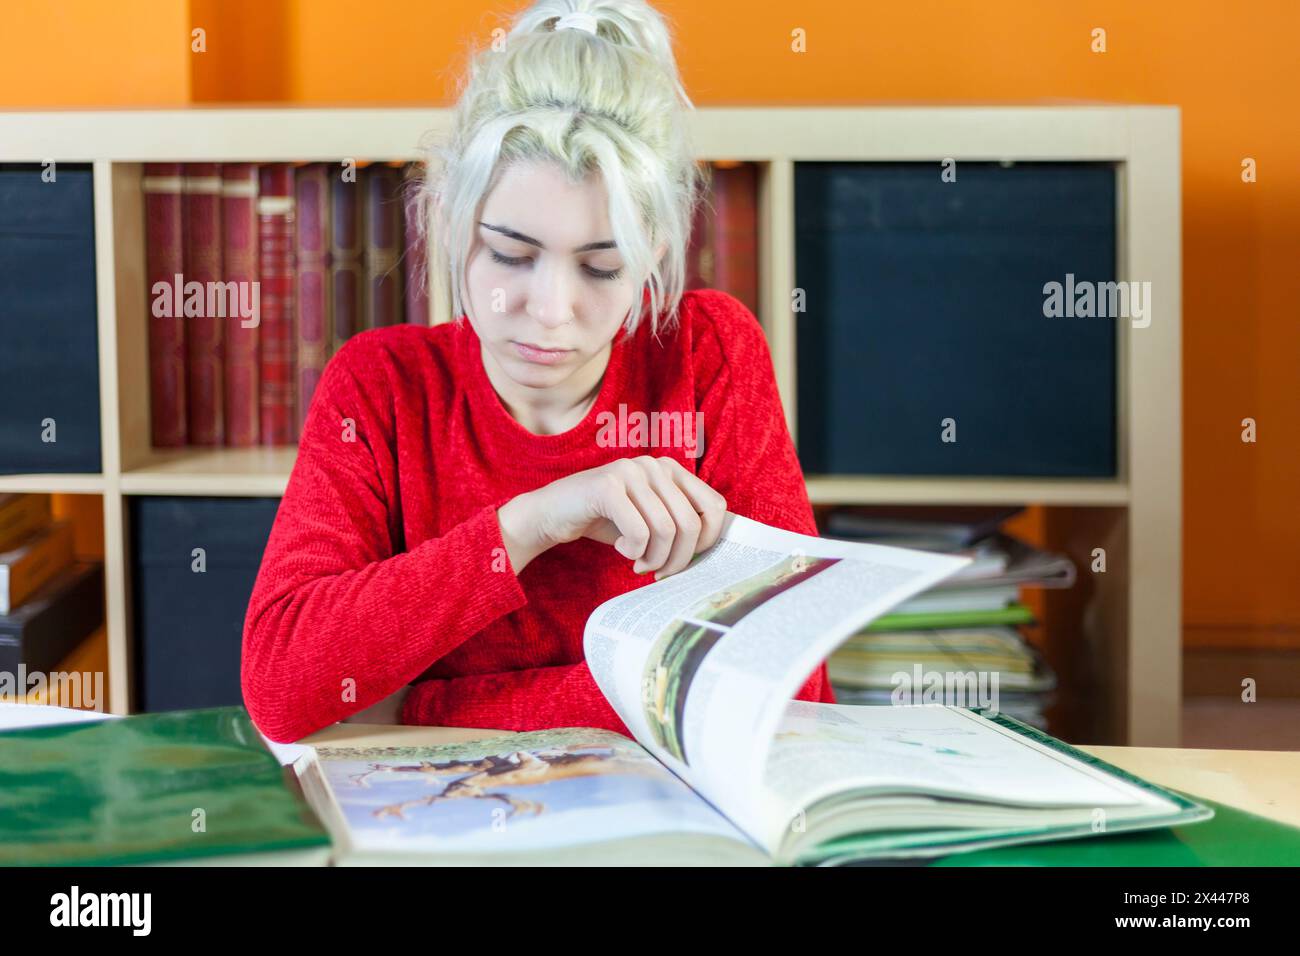 Junge Frau mit gebleichtem blondem Haar, mit Fokus auf Lesen. Rot gekleidet, an einem Bücherpult sitzend, umgeben von Büchern, symbolisiert tiefes Konzentra Stockfoto